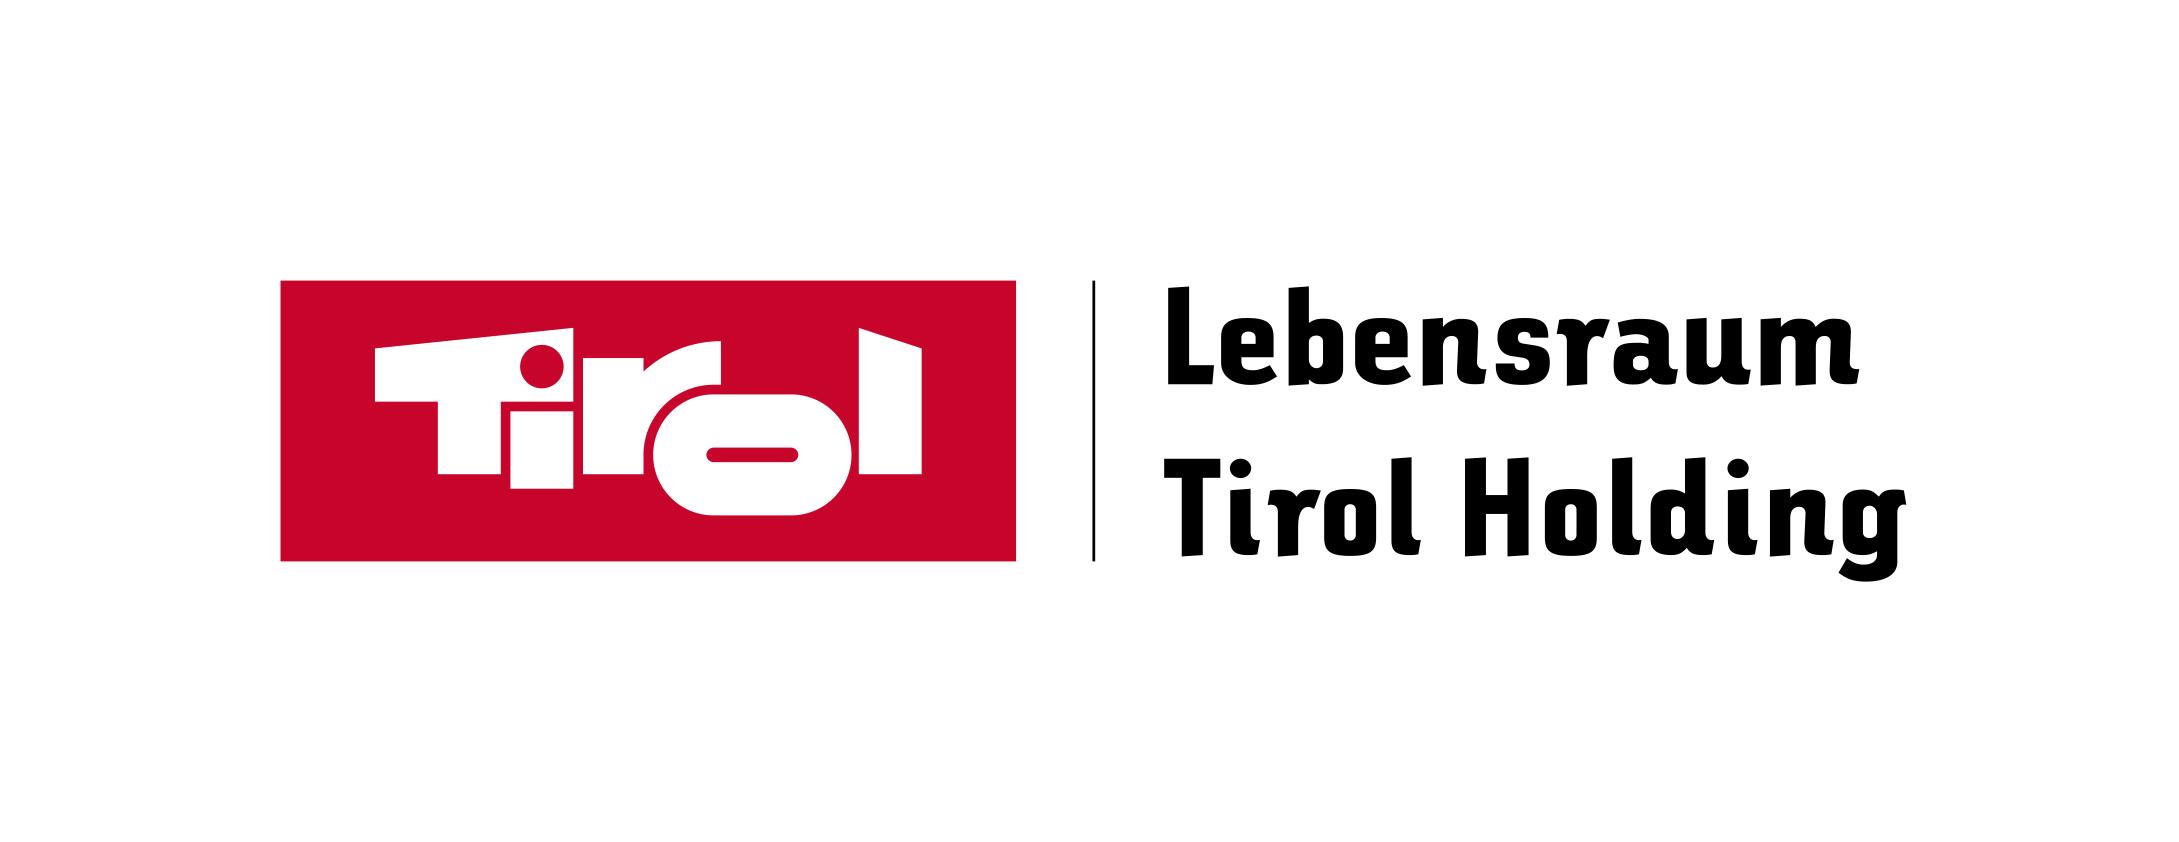 LRTH-Logo.jpg